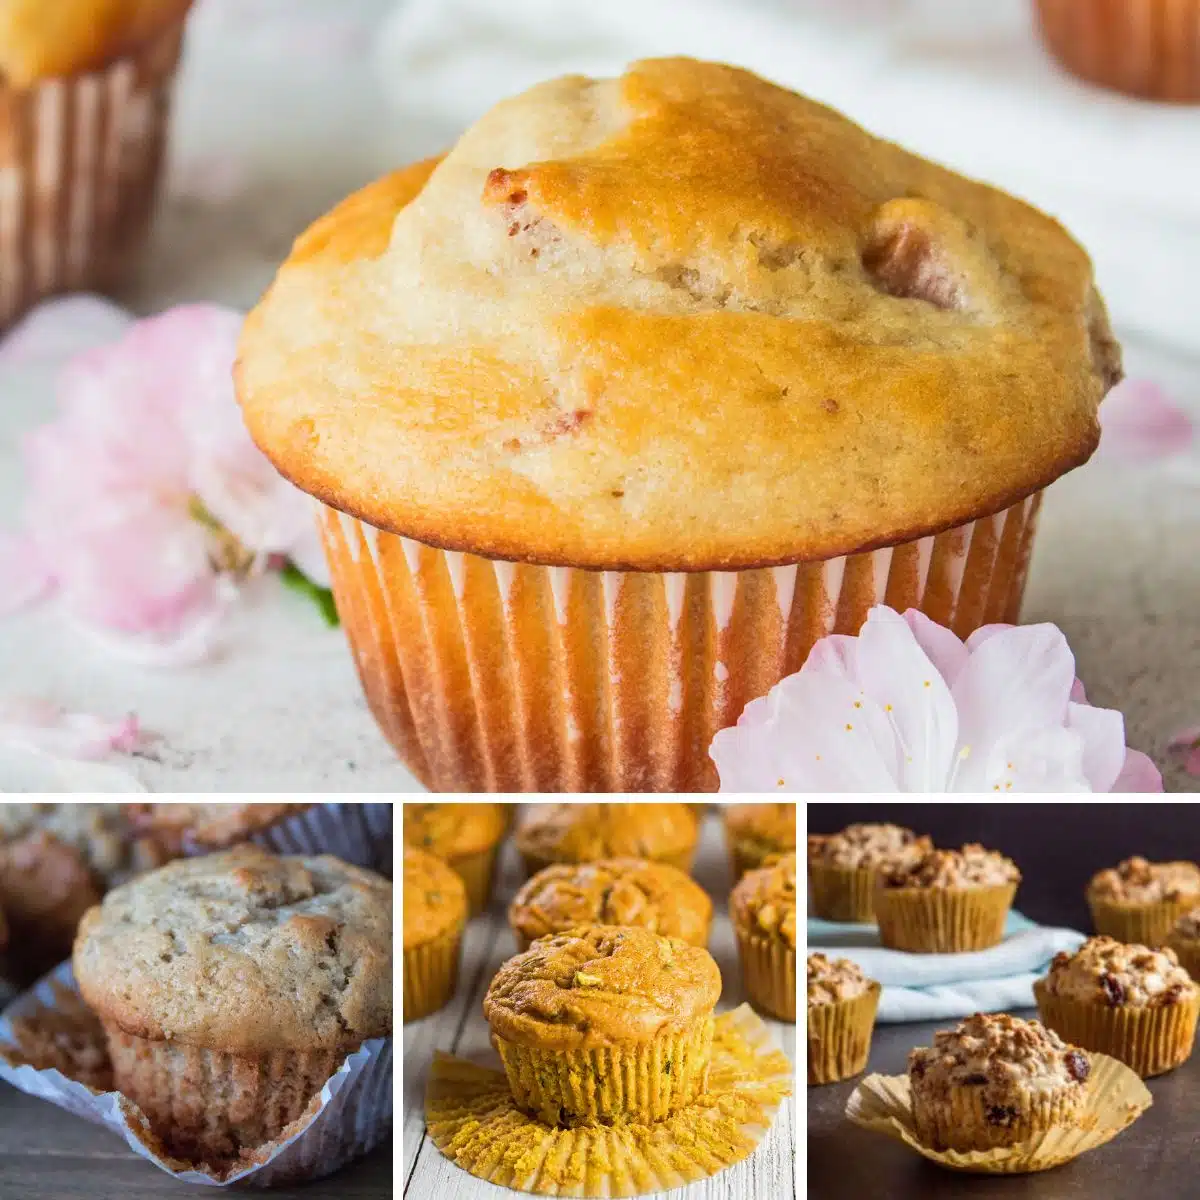 Bedste muffinsopskrifter collage med 4 muffins til at bage og nyde.